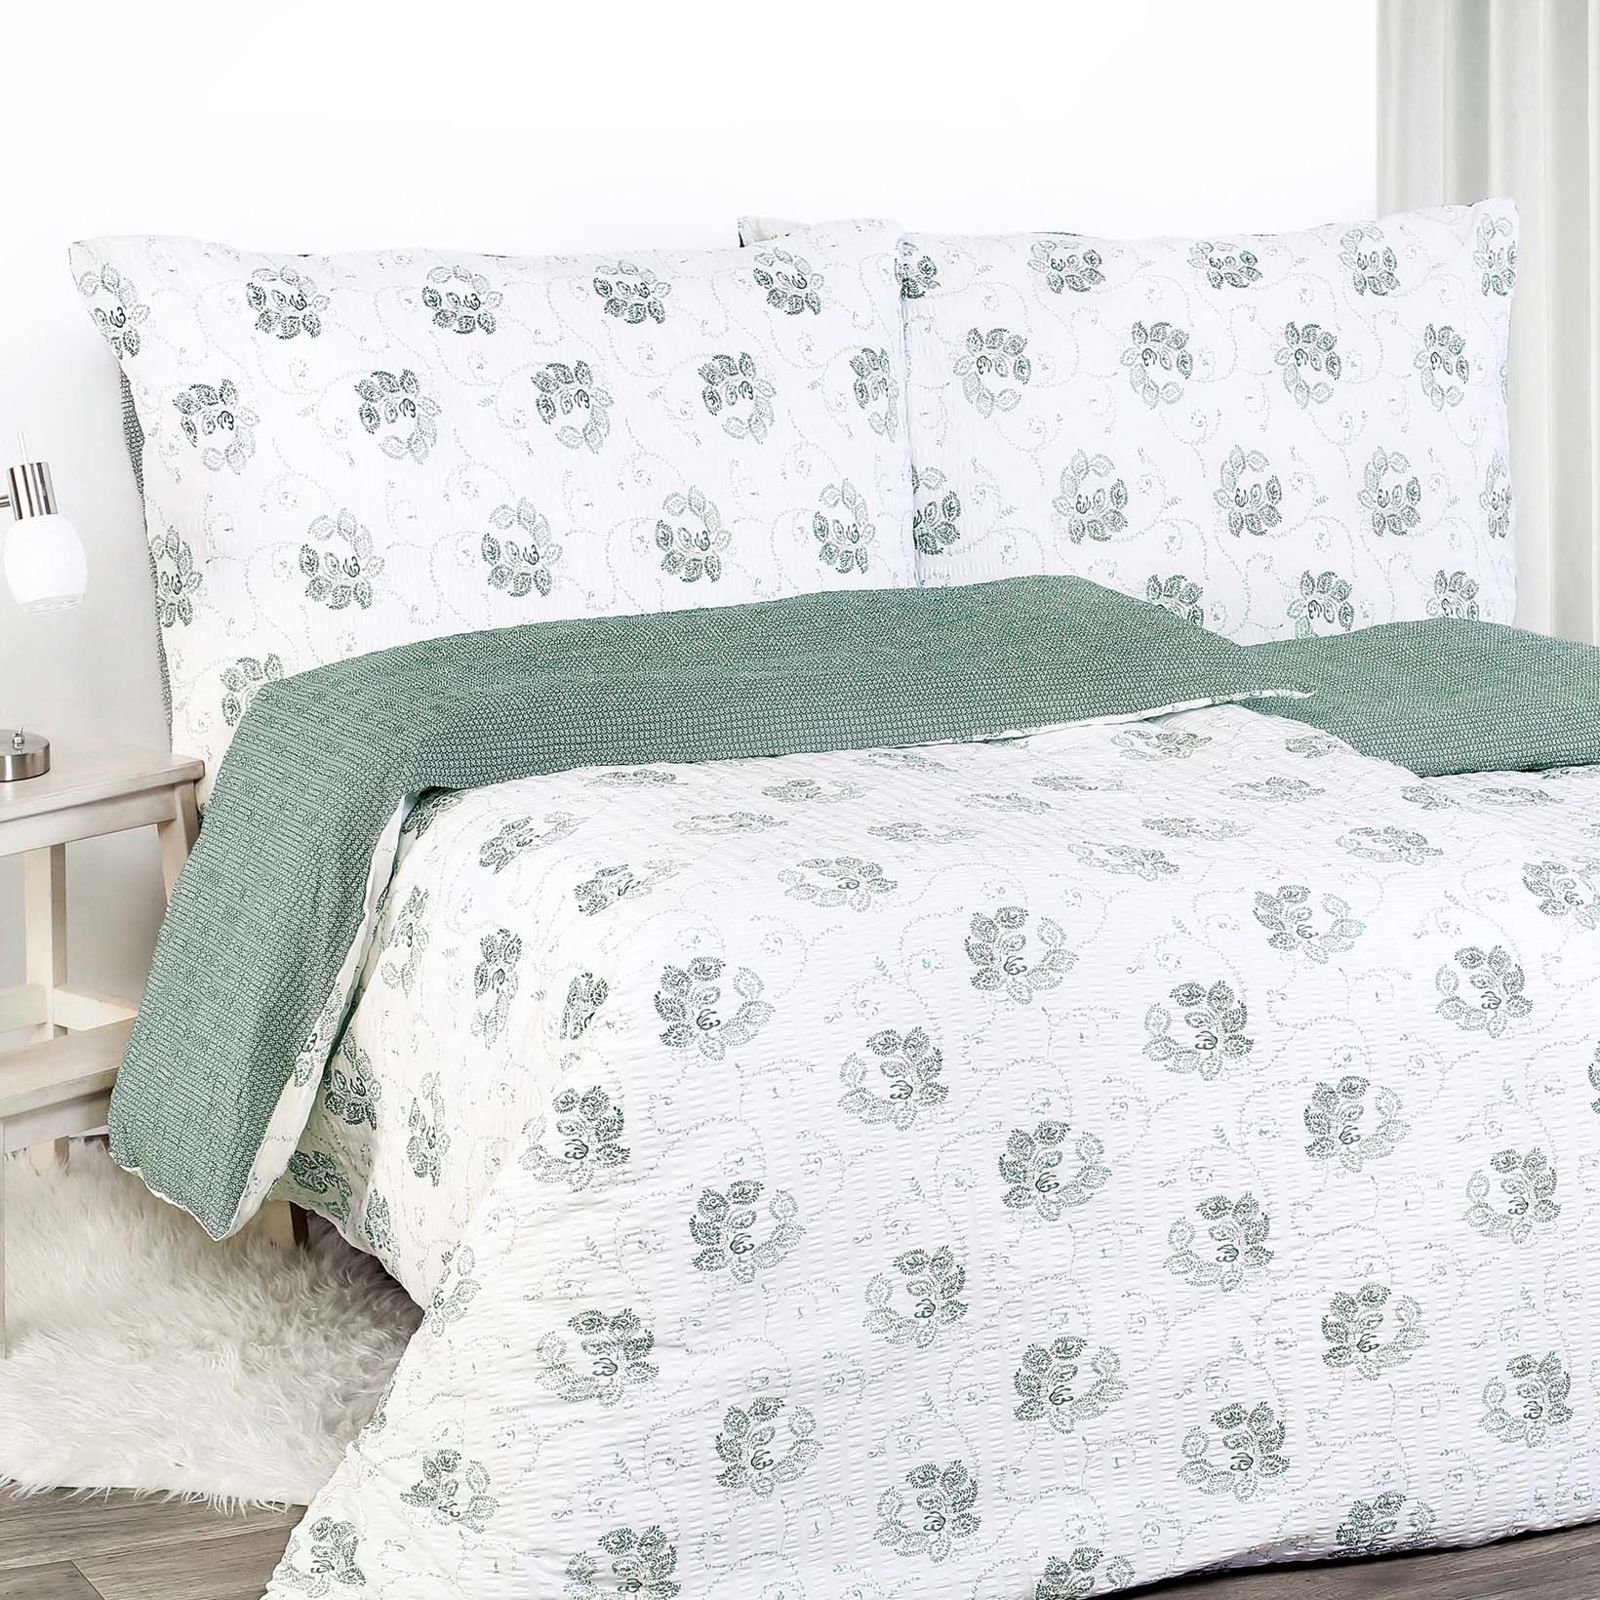 Krepové posteľné obliečky - tmavo zelené kvetované ornamenty s geometrickými tvarmi